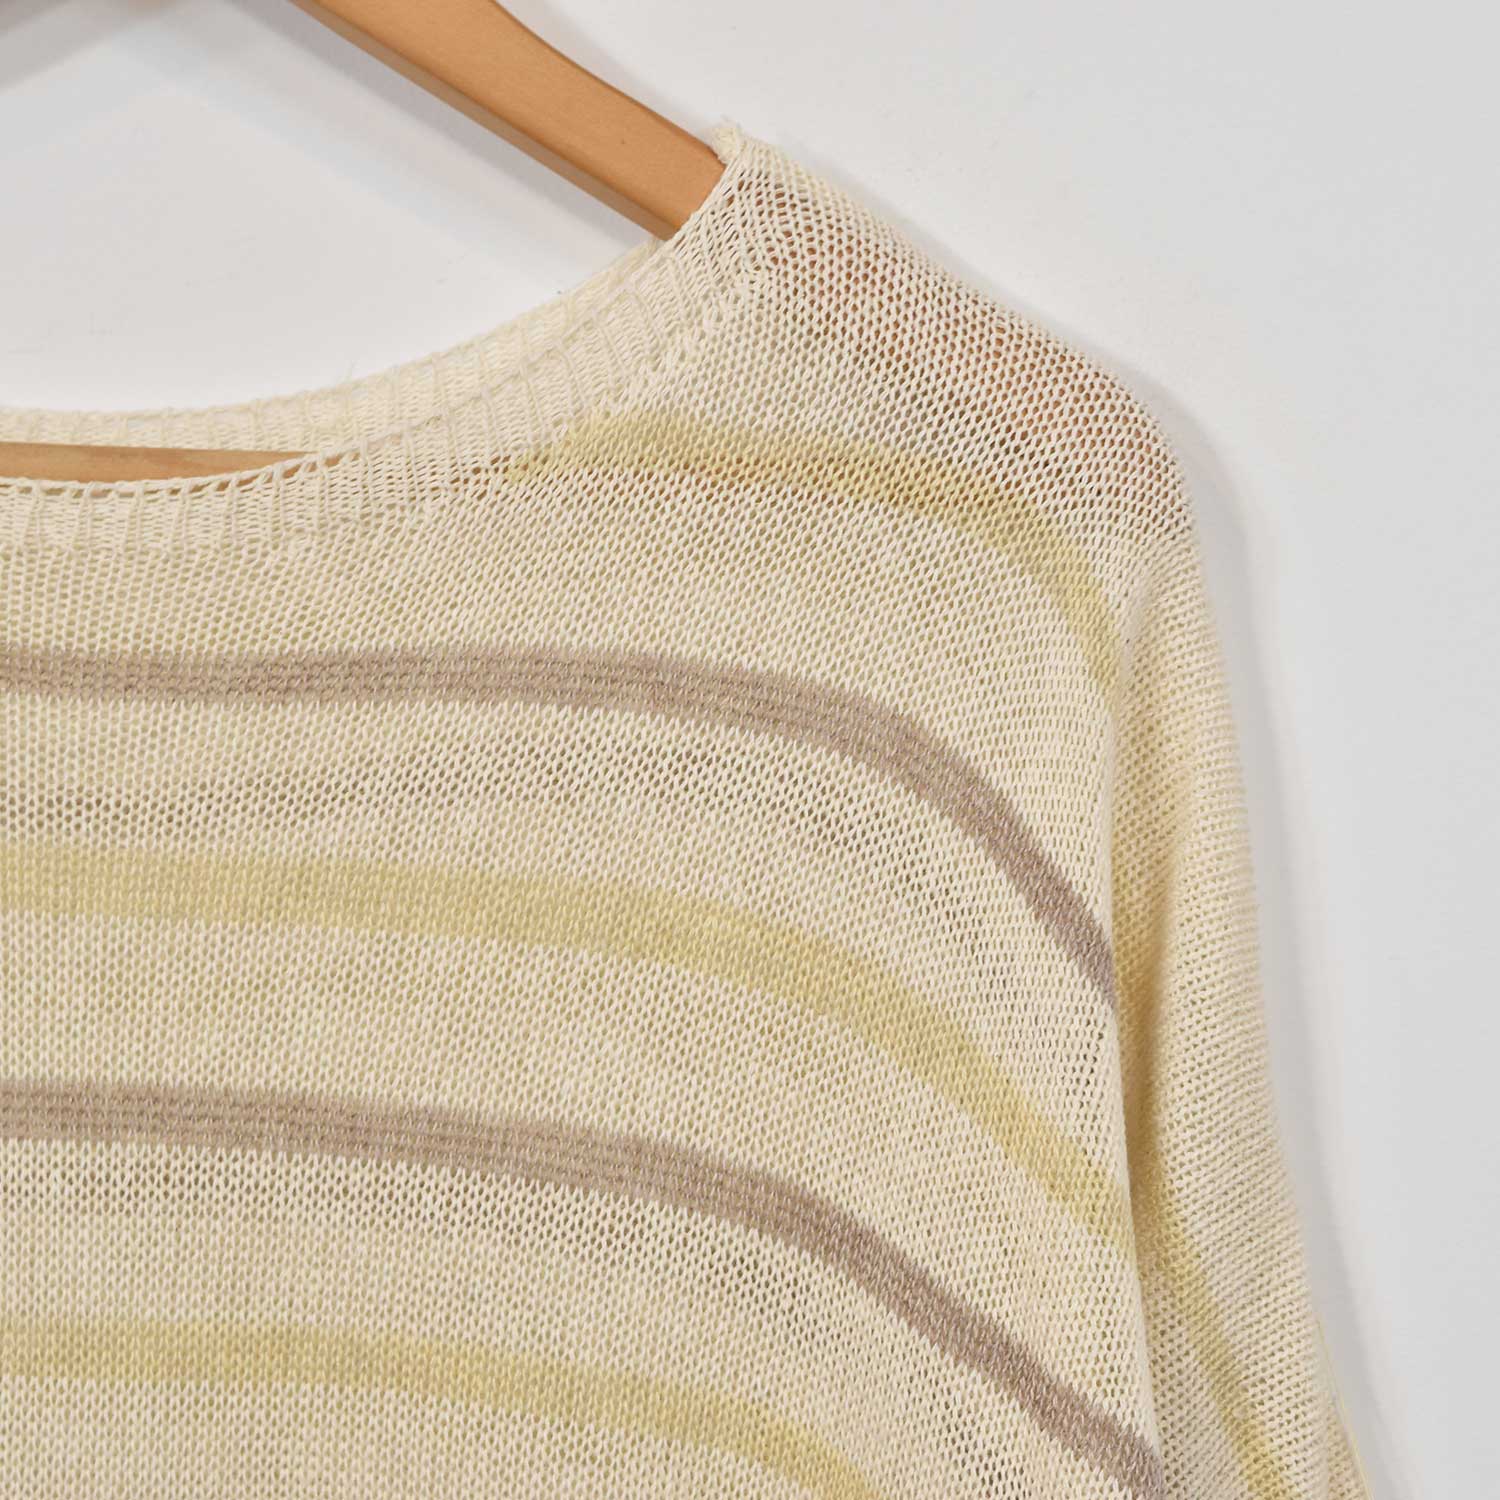 Beige striped sweater